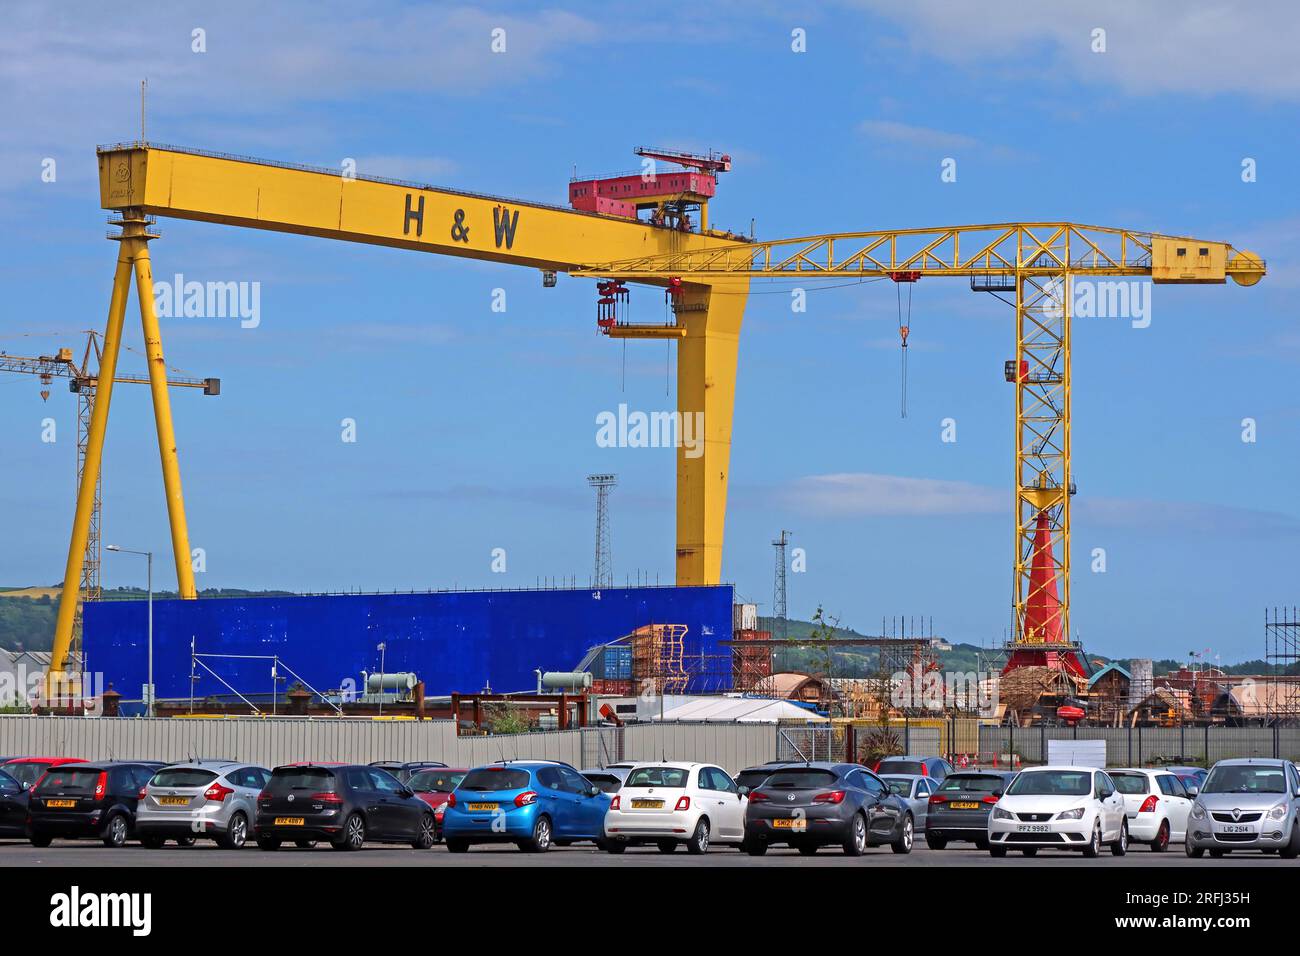 Grues jaunes Harland et Wolff, dans le chantier naval, Samson & Goliath, Queen's Island, Belfast , Irlande du Nord, Royaume-Uni, BT3 9EU Banque D'Images